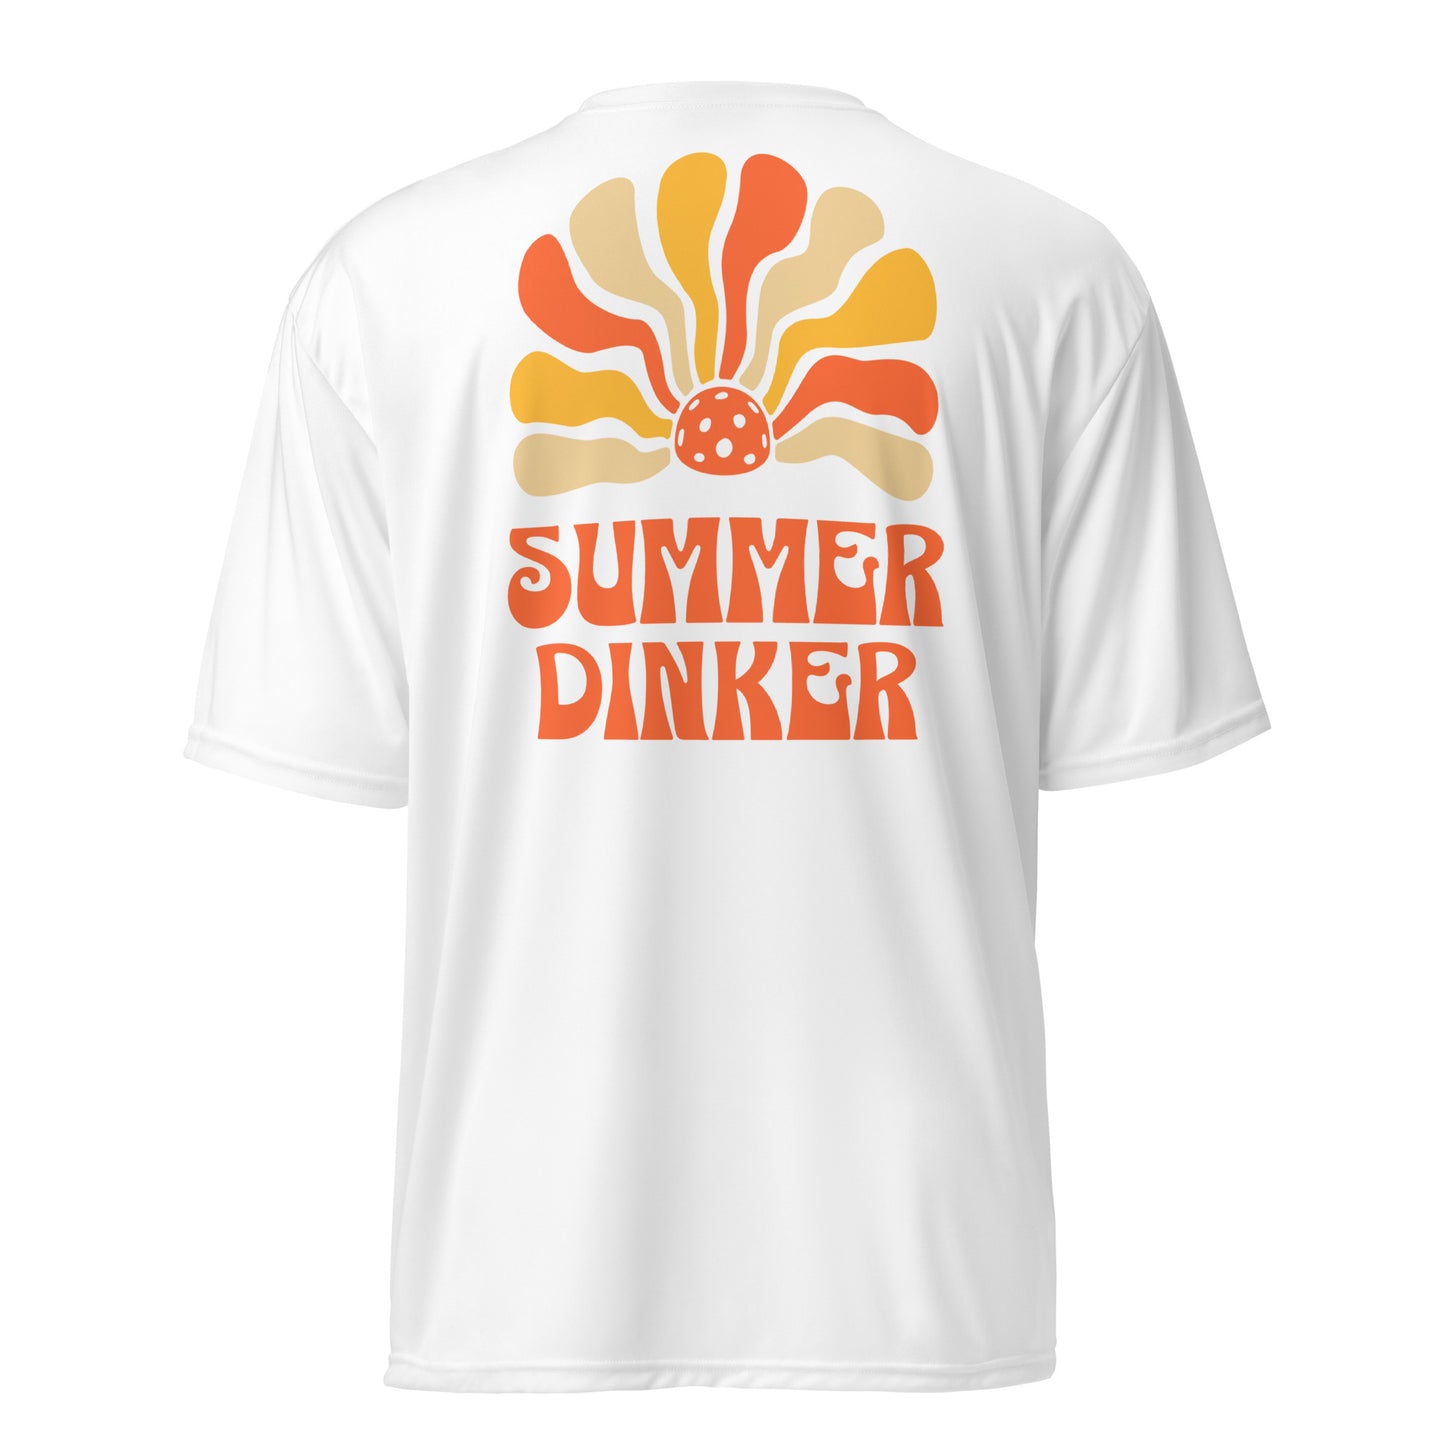 Summer Dinker performance t-shirt